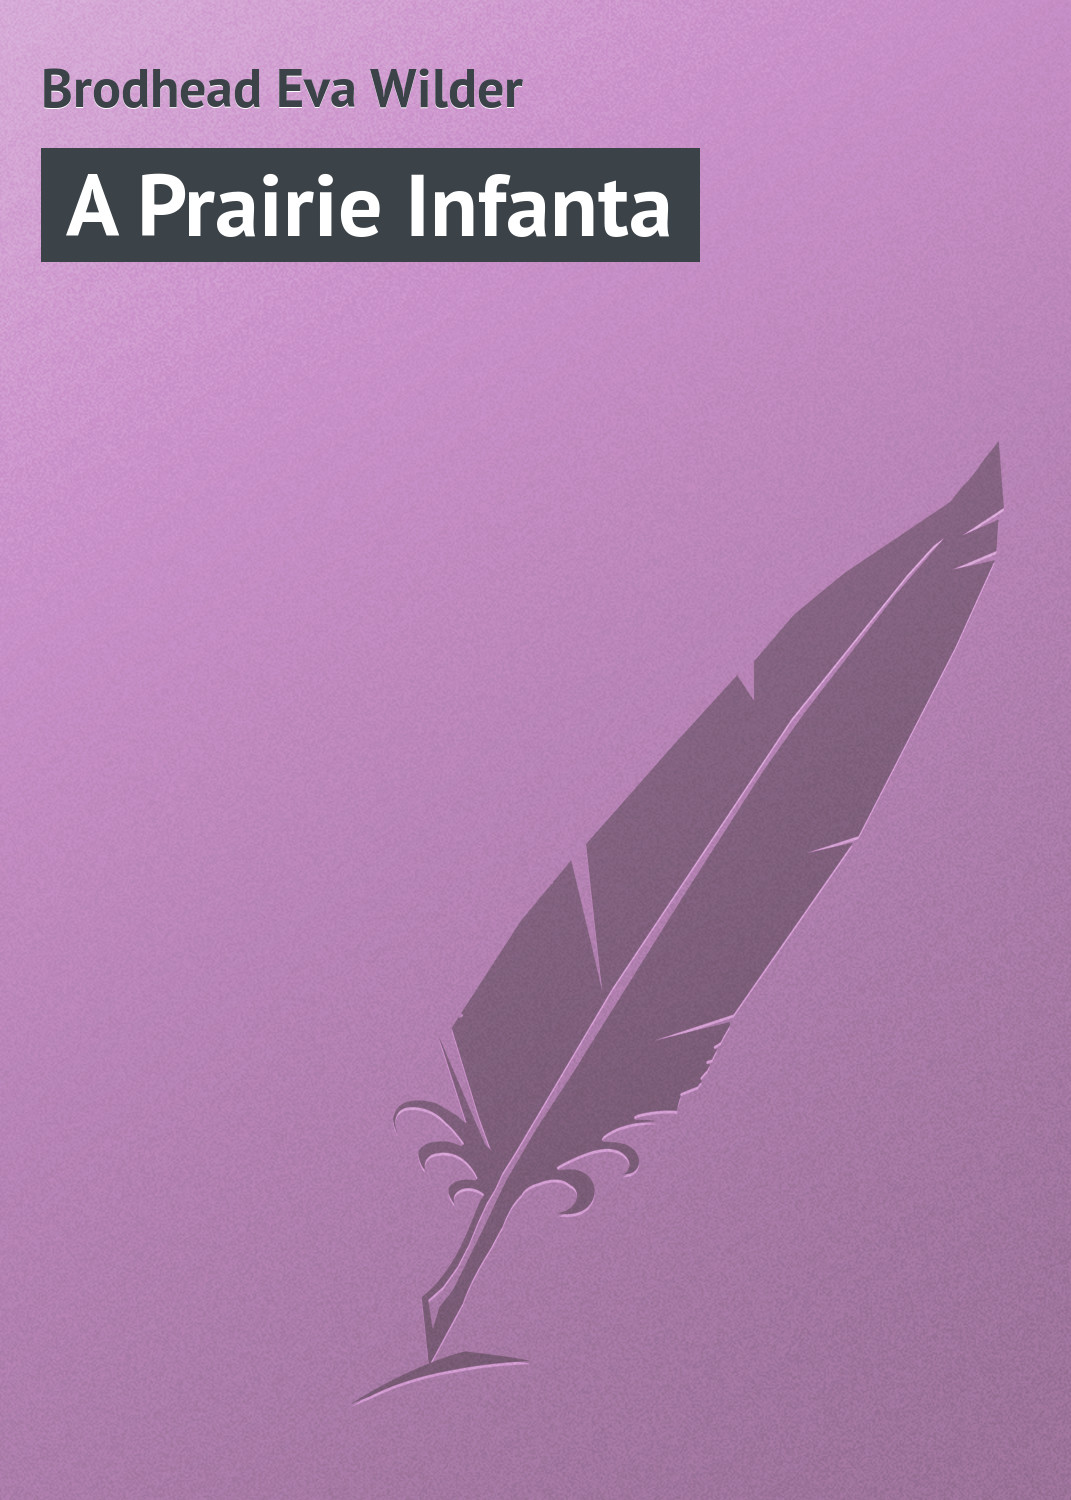 Книга A Prairie Infanta из серии , созданная Eva Brodhead, может относится к жанру Зарубежная классика, Зарубежные приключения. Стоимость электронной книги A Prairie Infanta с идентификатором 23164371 составляет 5.99 руб.